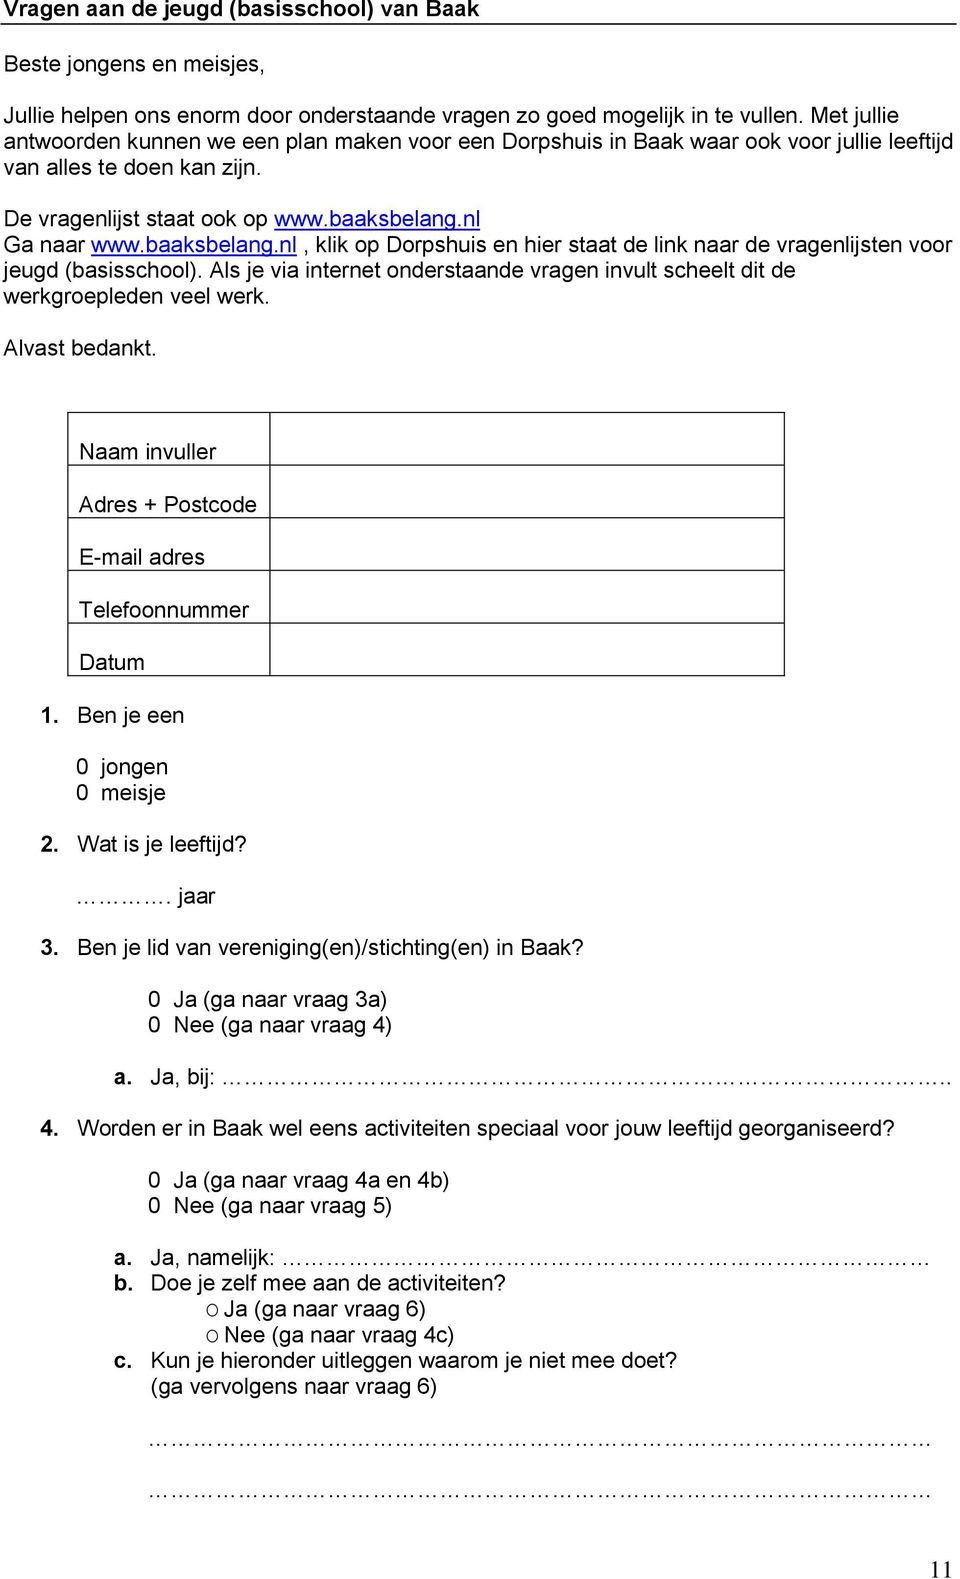 baaksbelang.nl, klik op Dorpshuis en hier staat de link naar de vragenlijsten voor jeugd (basisschool). Als je via internet onderstaande vragen invult scheelt dit de werkgroepleden veel werk.